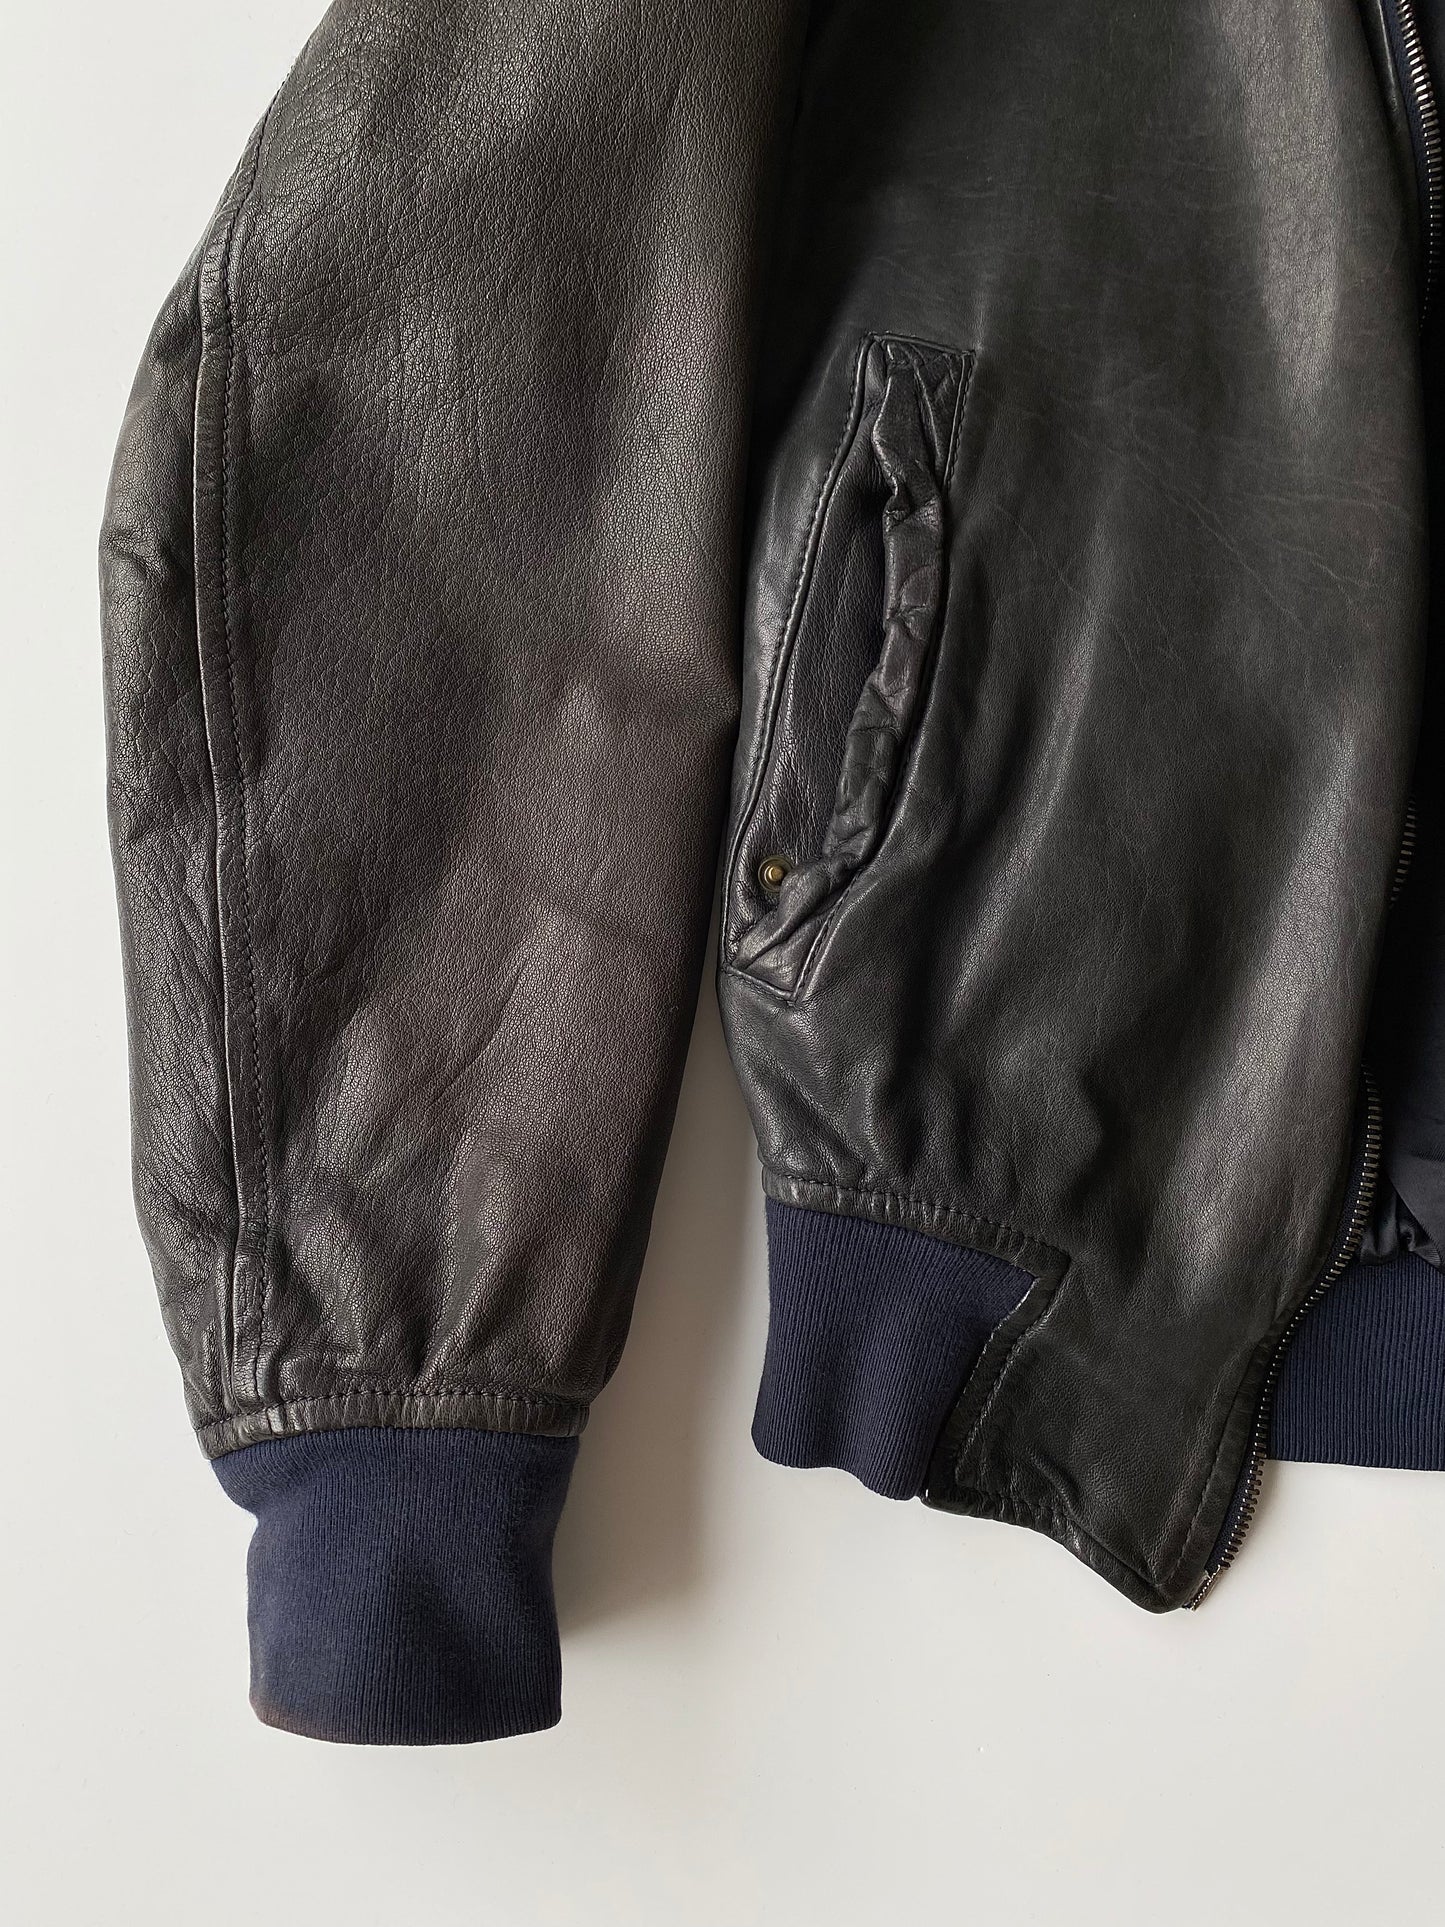 Dolce & Gabbana 2003 Aged Leather Bomber Jacket